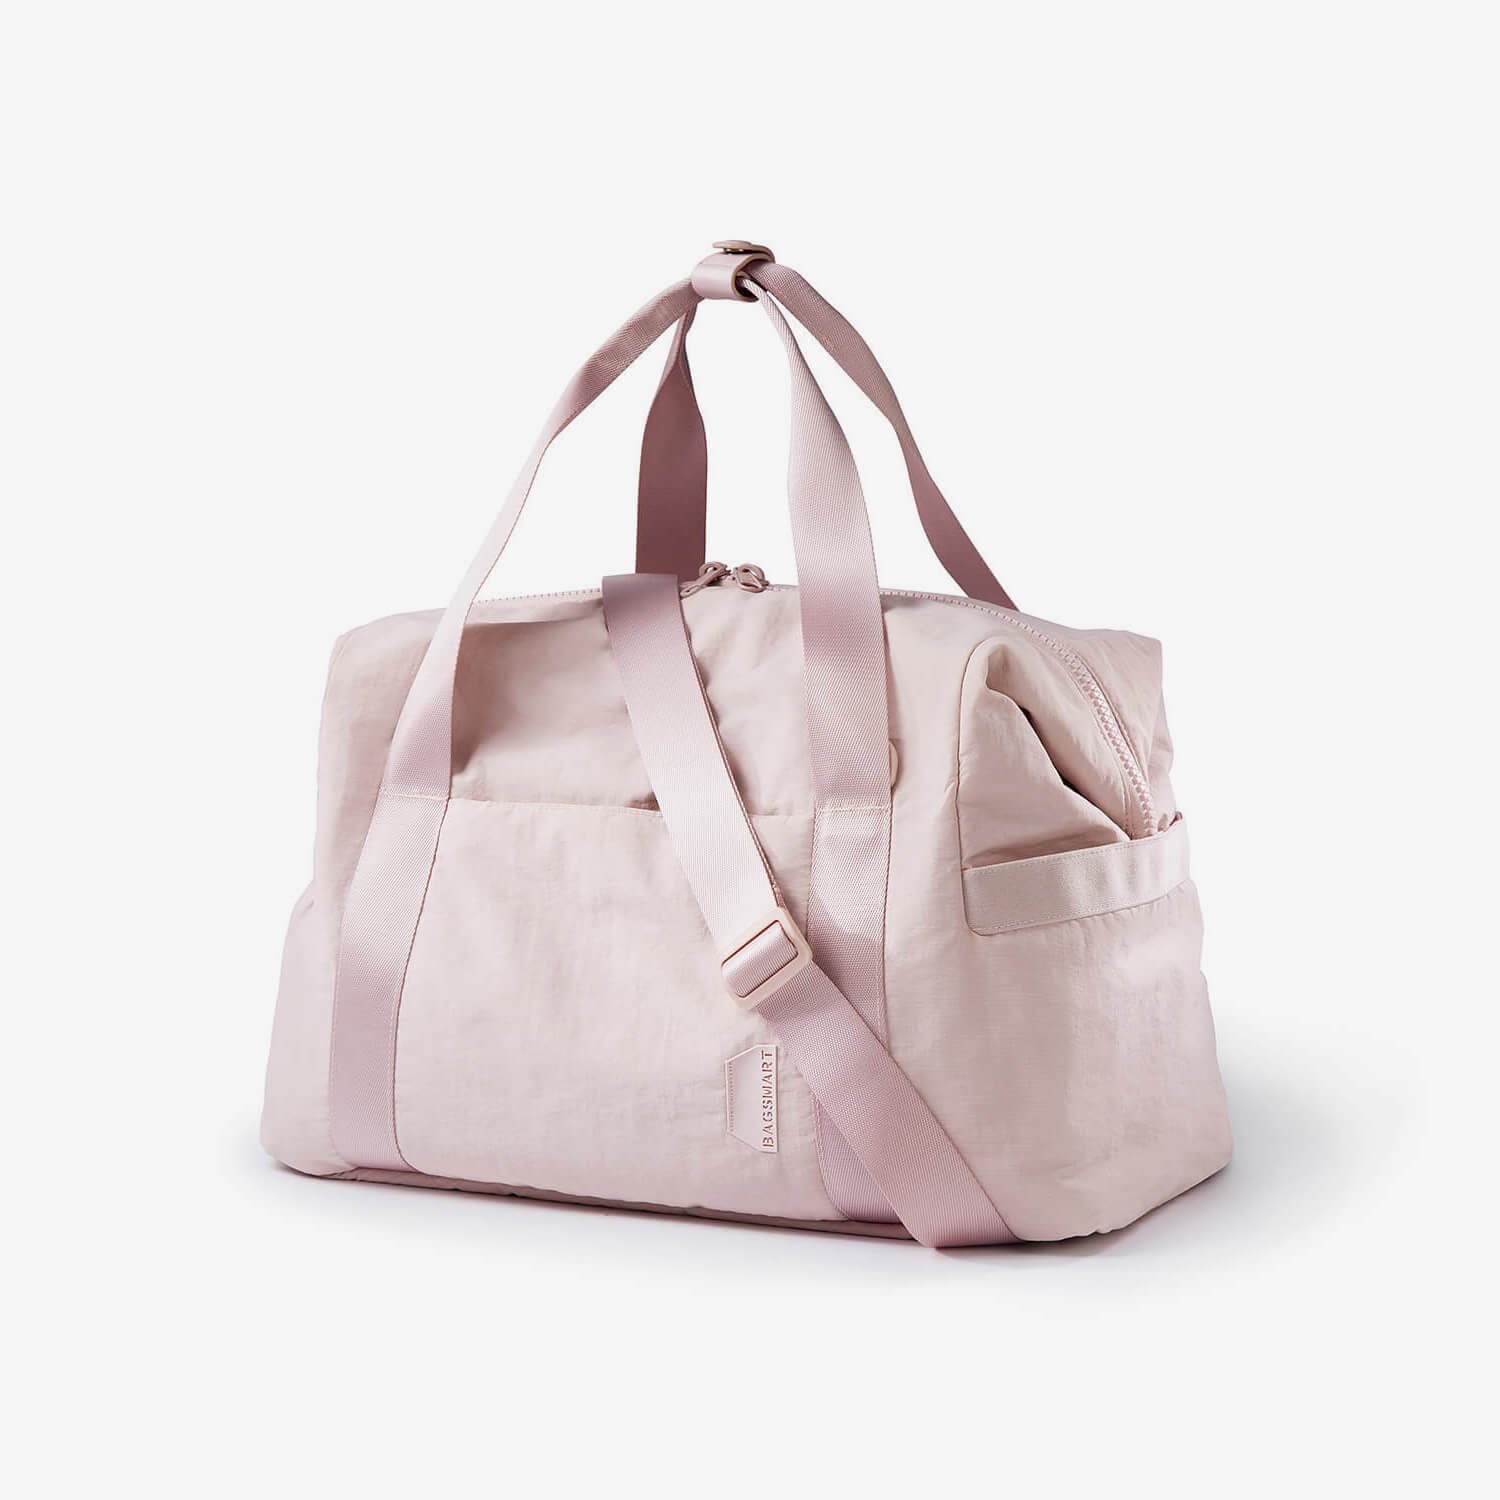 Zoraesque Travel Lightweight Duffel Gym Bags for Women– Bagsmart